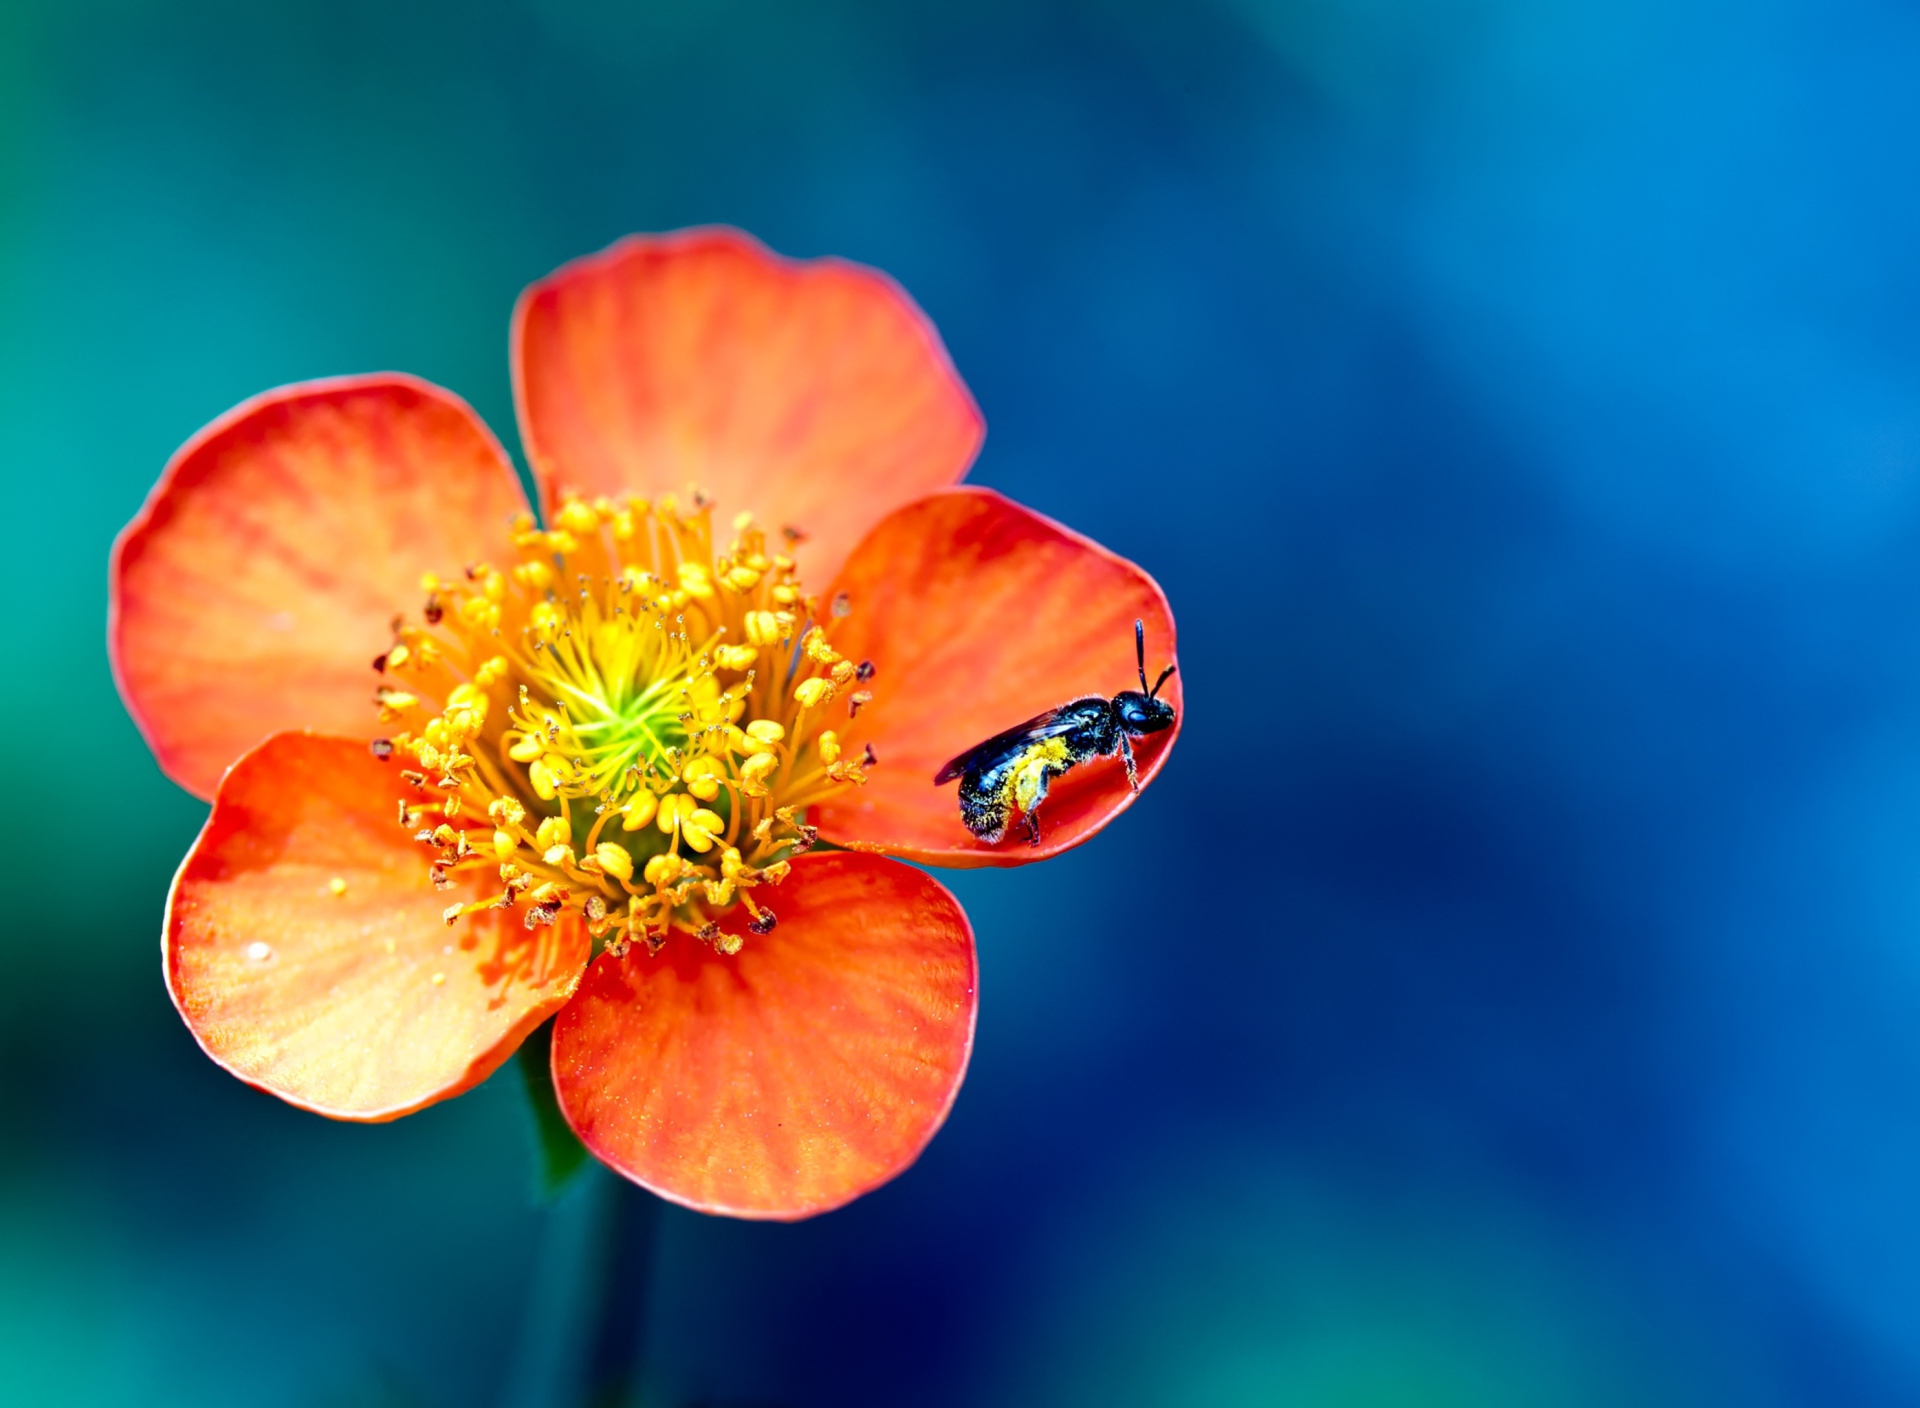 Обои Bee On Orange Petals 1920x1408